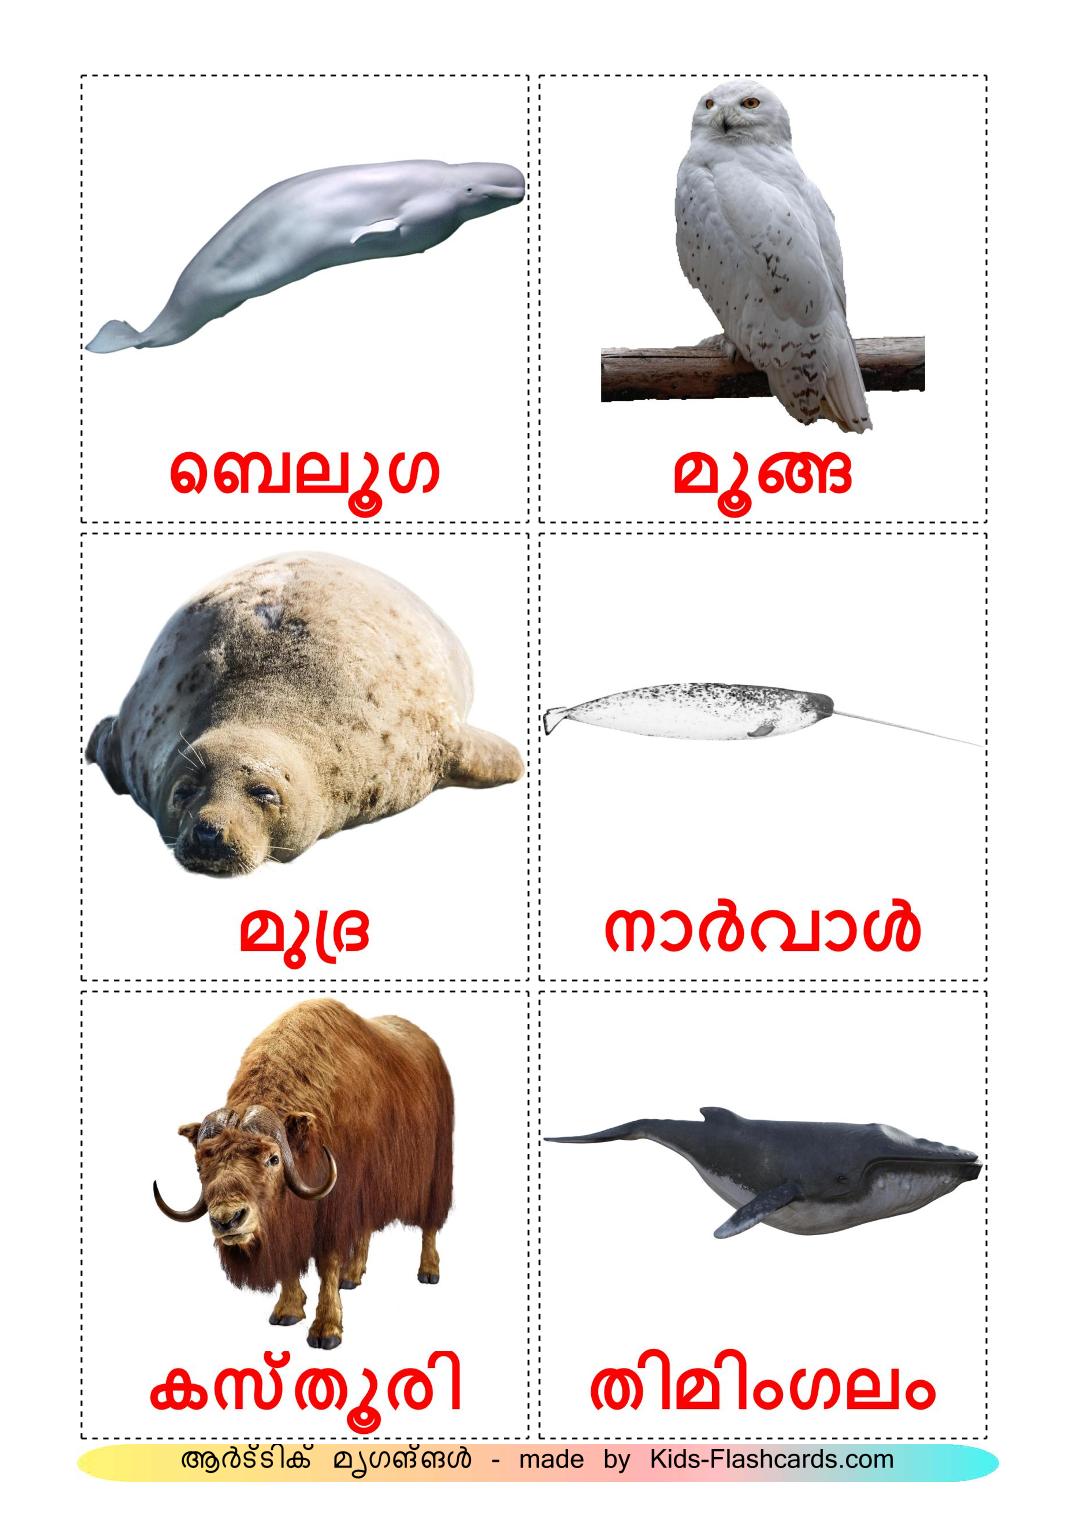 Tiere in der arktis - 14 kostenlose, druckbare Malayalam Flashcards 